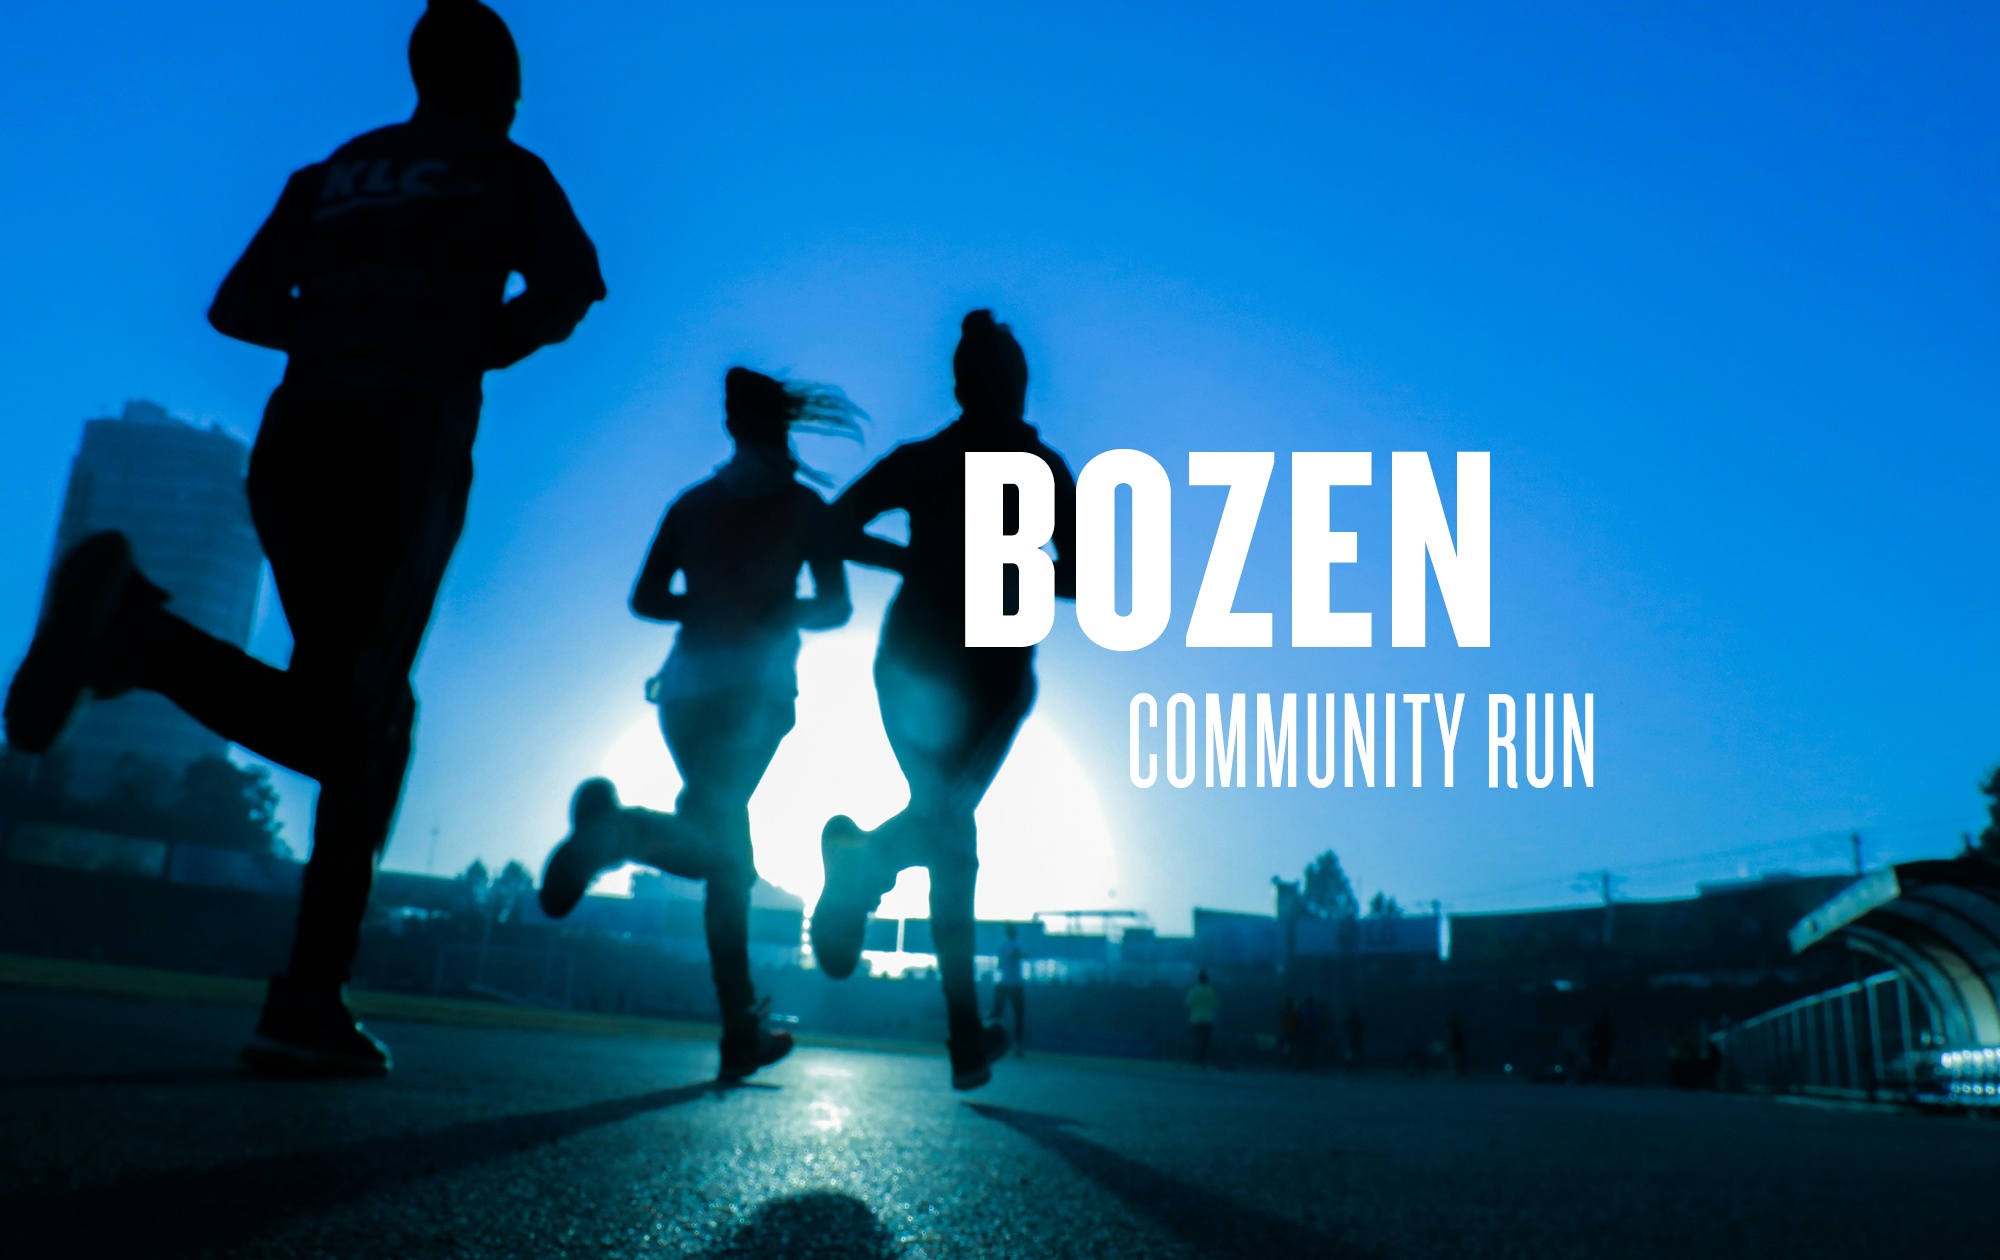 EVENT: Bozen Community Run